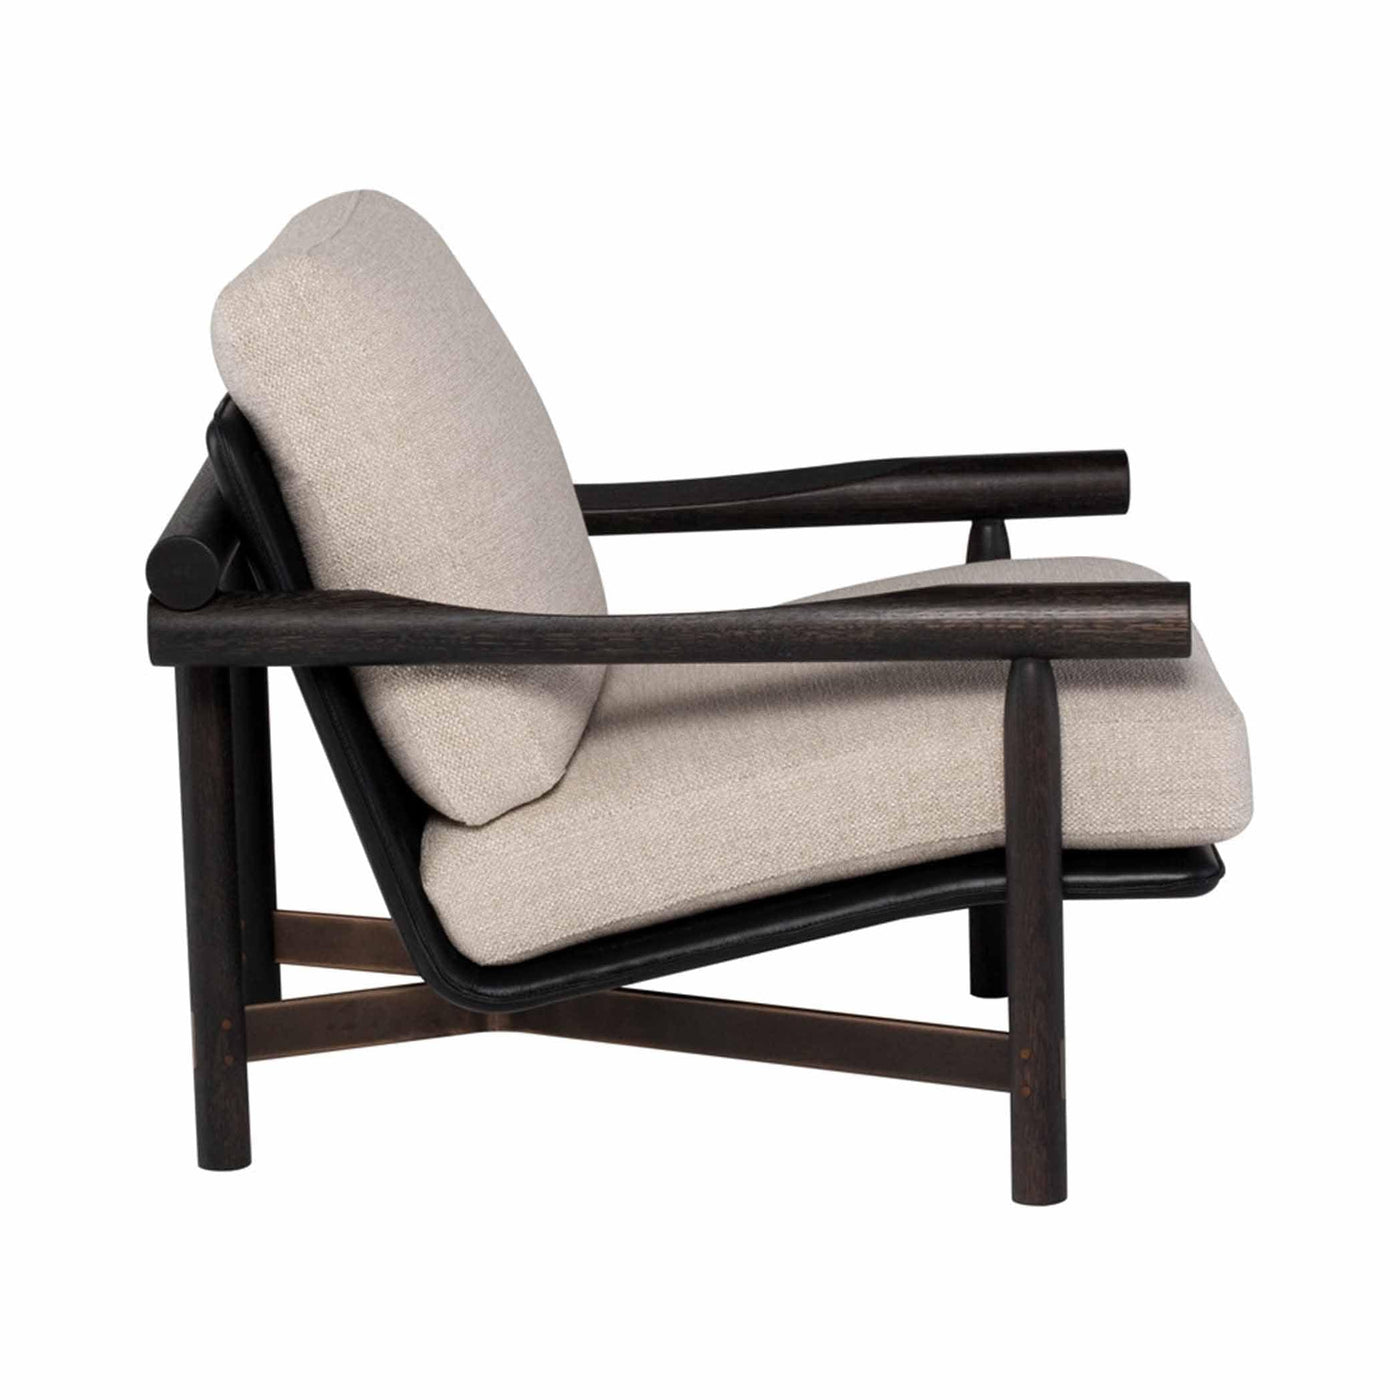 Fauteuil Stilt de District Eight : un design moderne avec des coussins ergonomiques et des finitions en acier. Chêne ébonisé avec tissu Tara Quartz ou chêne fumé avec tissu Tara Flint pour un style raffiné.